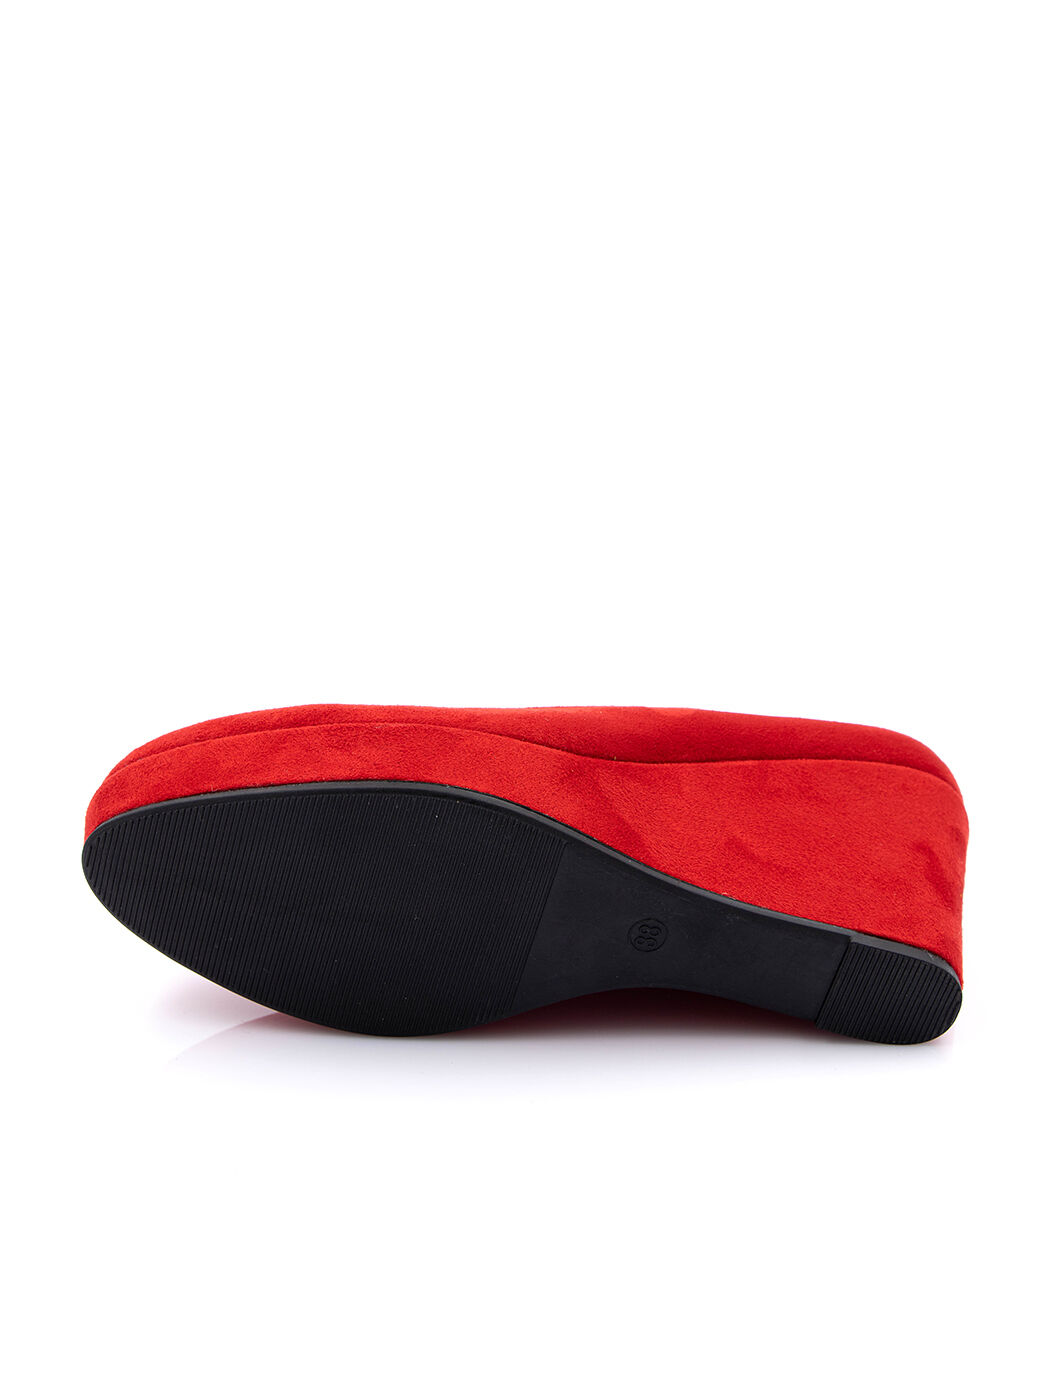 Туфли женские красные экозамша каблук устойчивый демисезон от производителя 4M вид 2